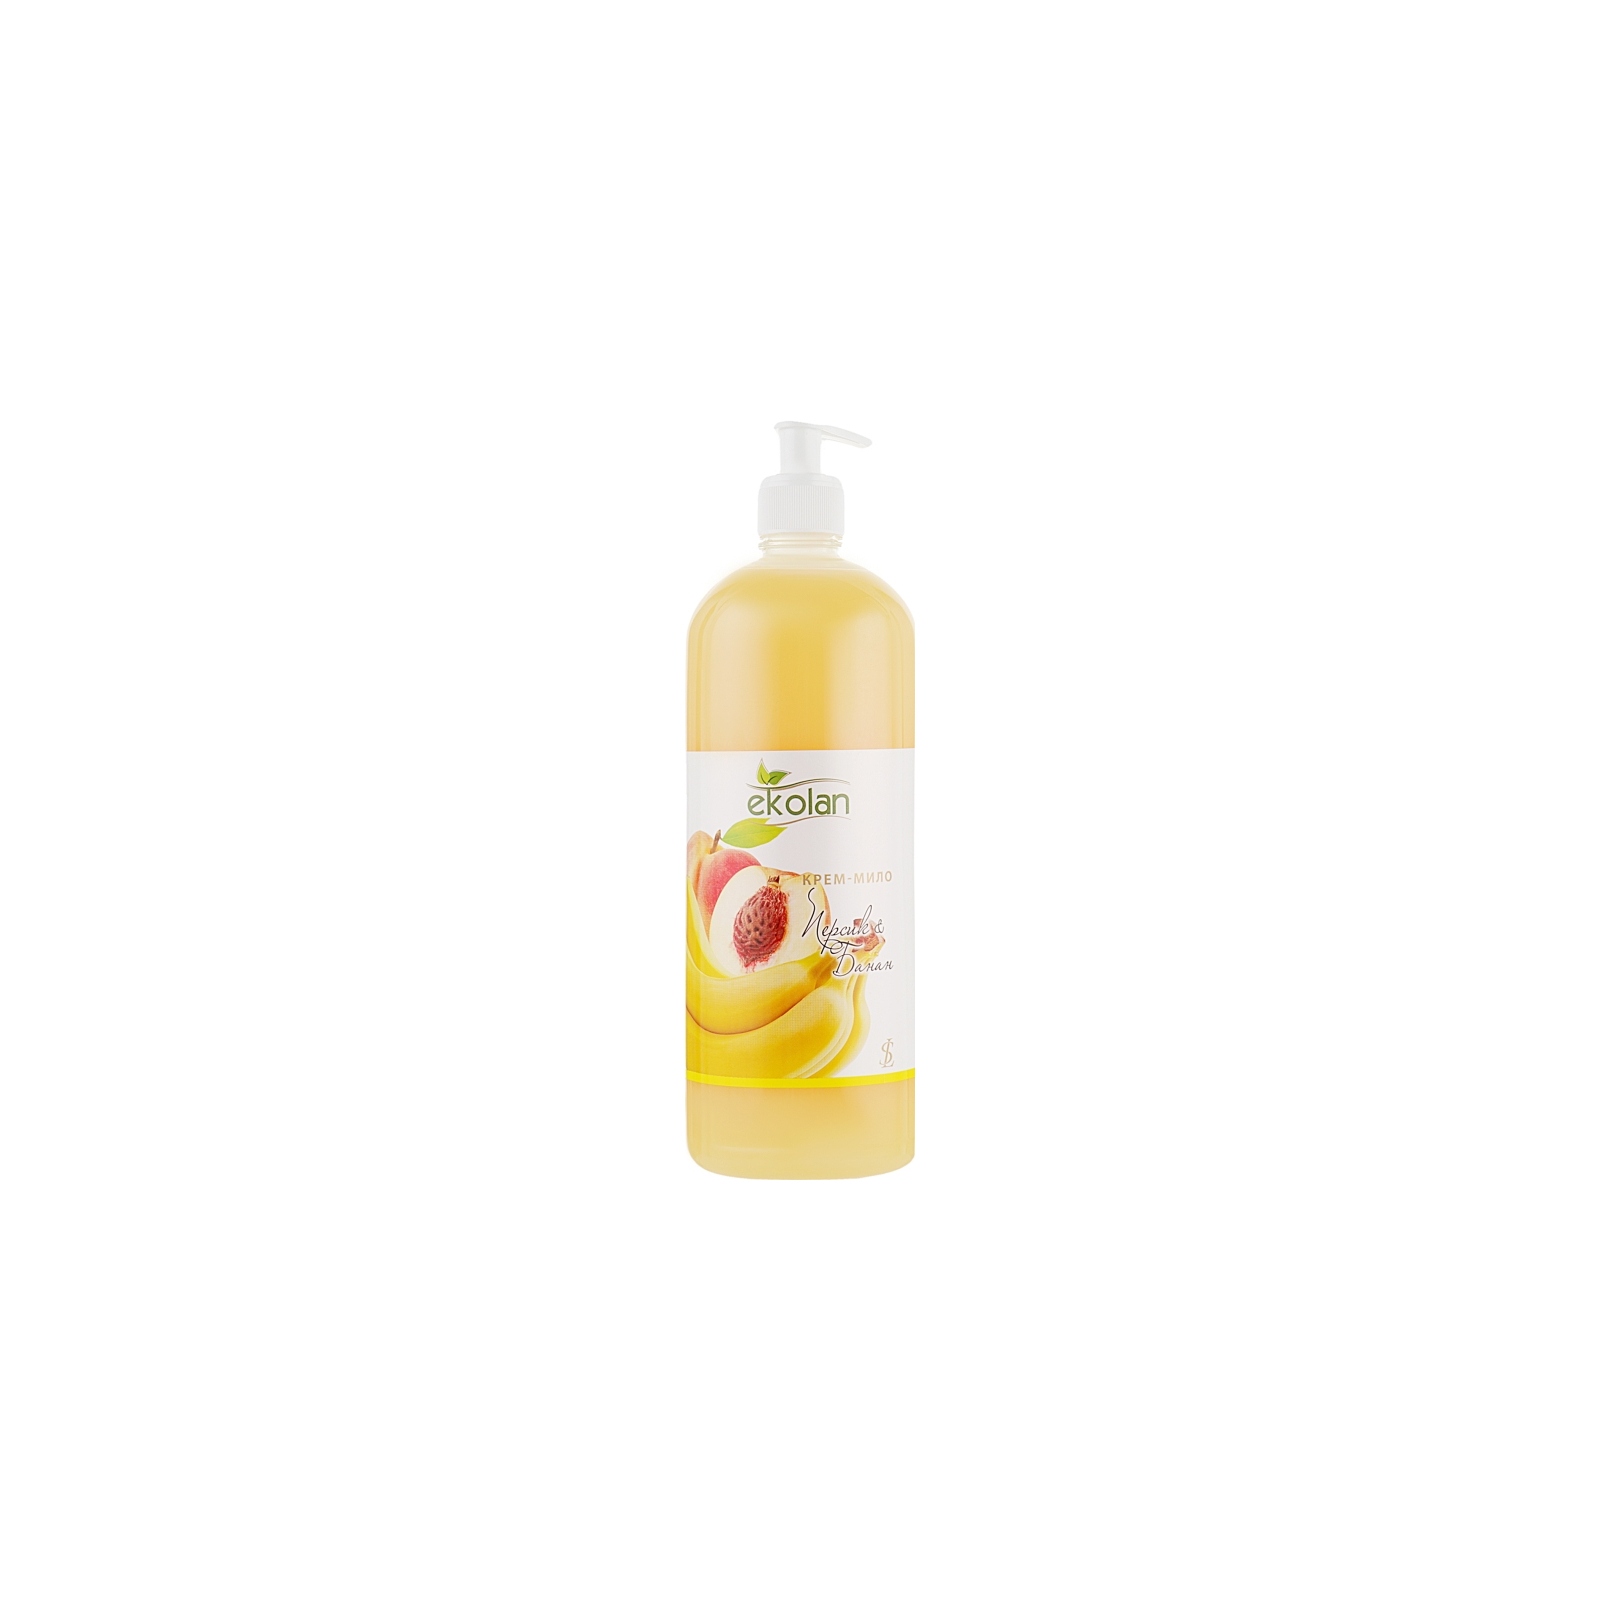 Жидкое мыло Ekolan Персик и банан 1000 г (4820217131252)